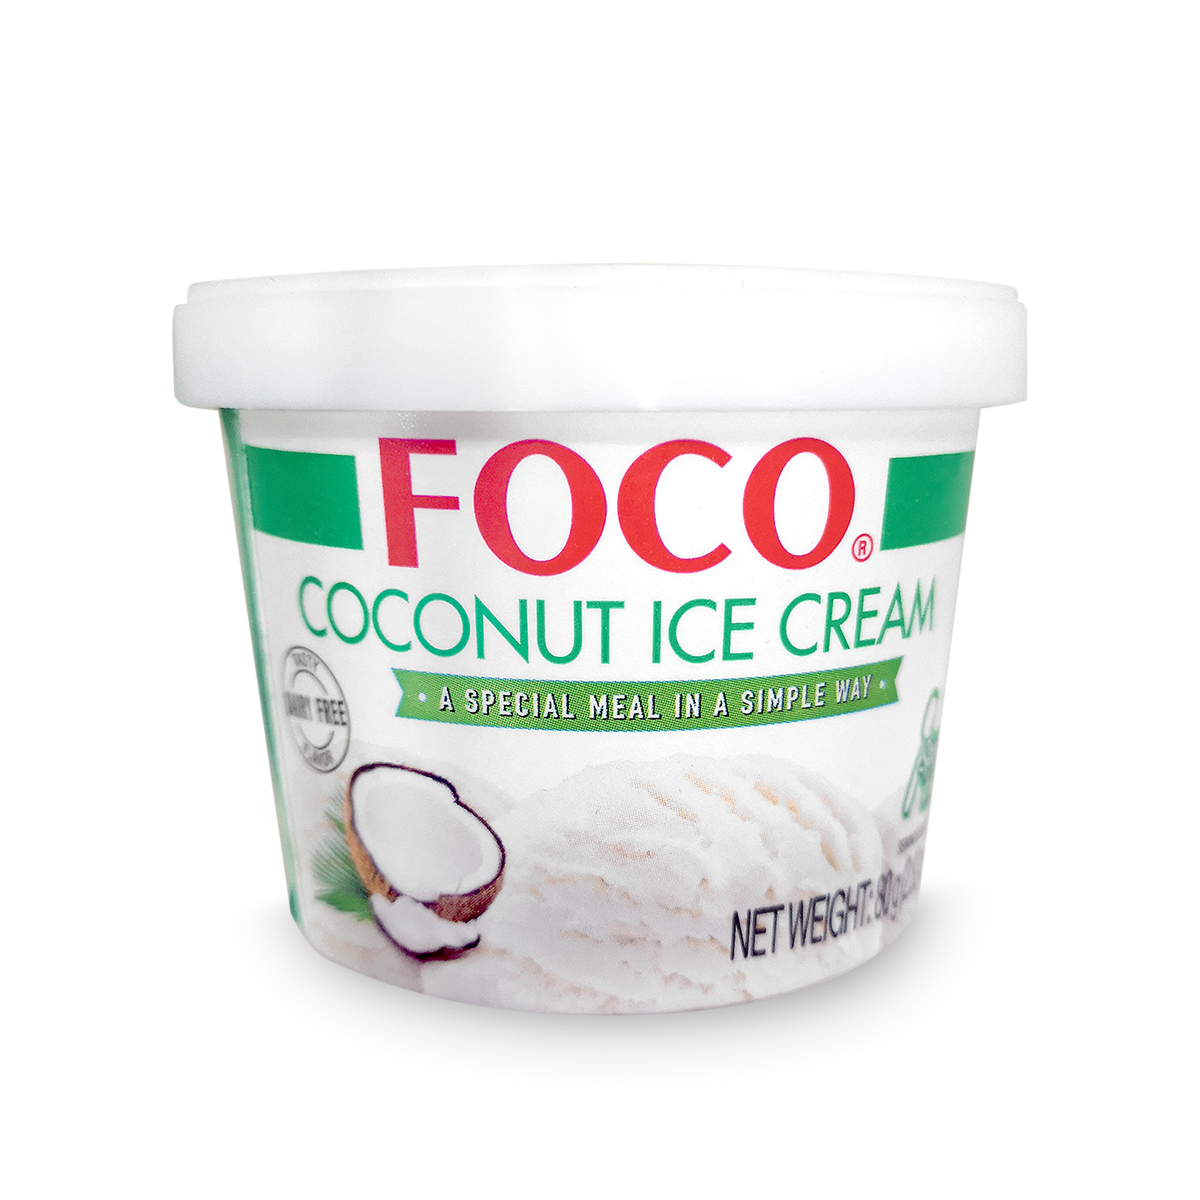 Exclusiv in magazine - Inghetata cu cocos FOCO 80g, asianfood.ro